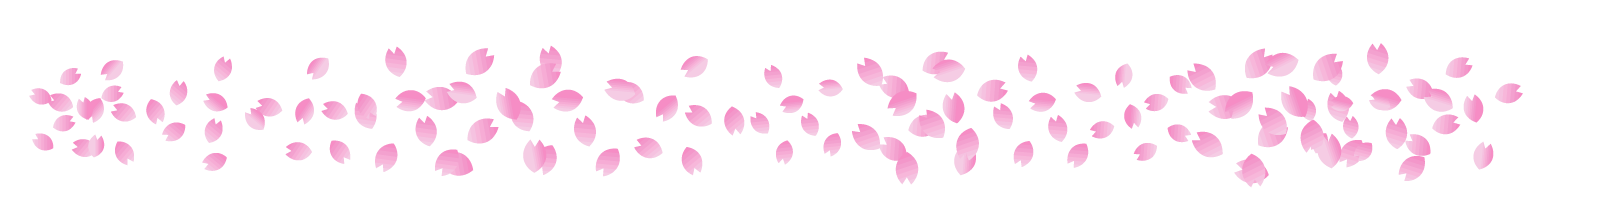 画像をダウンロード 桜 花びら 素材 フリー イラスト素材画像無料